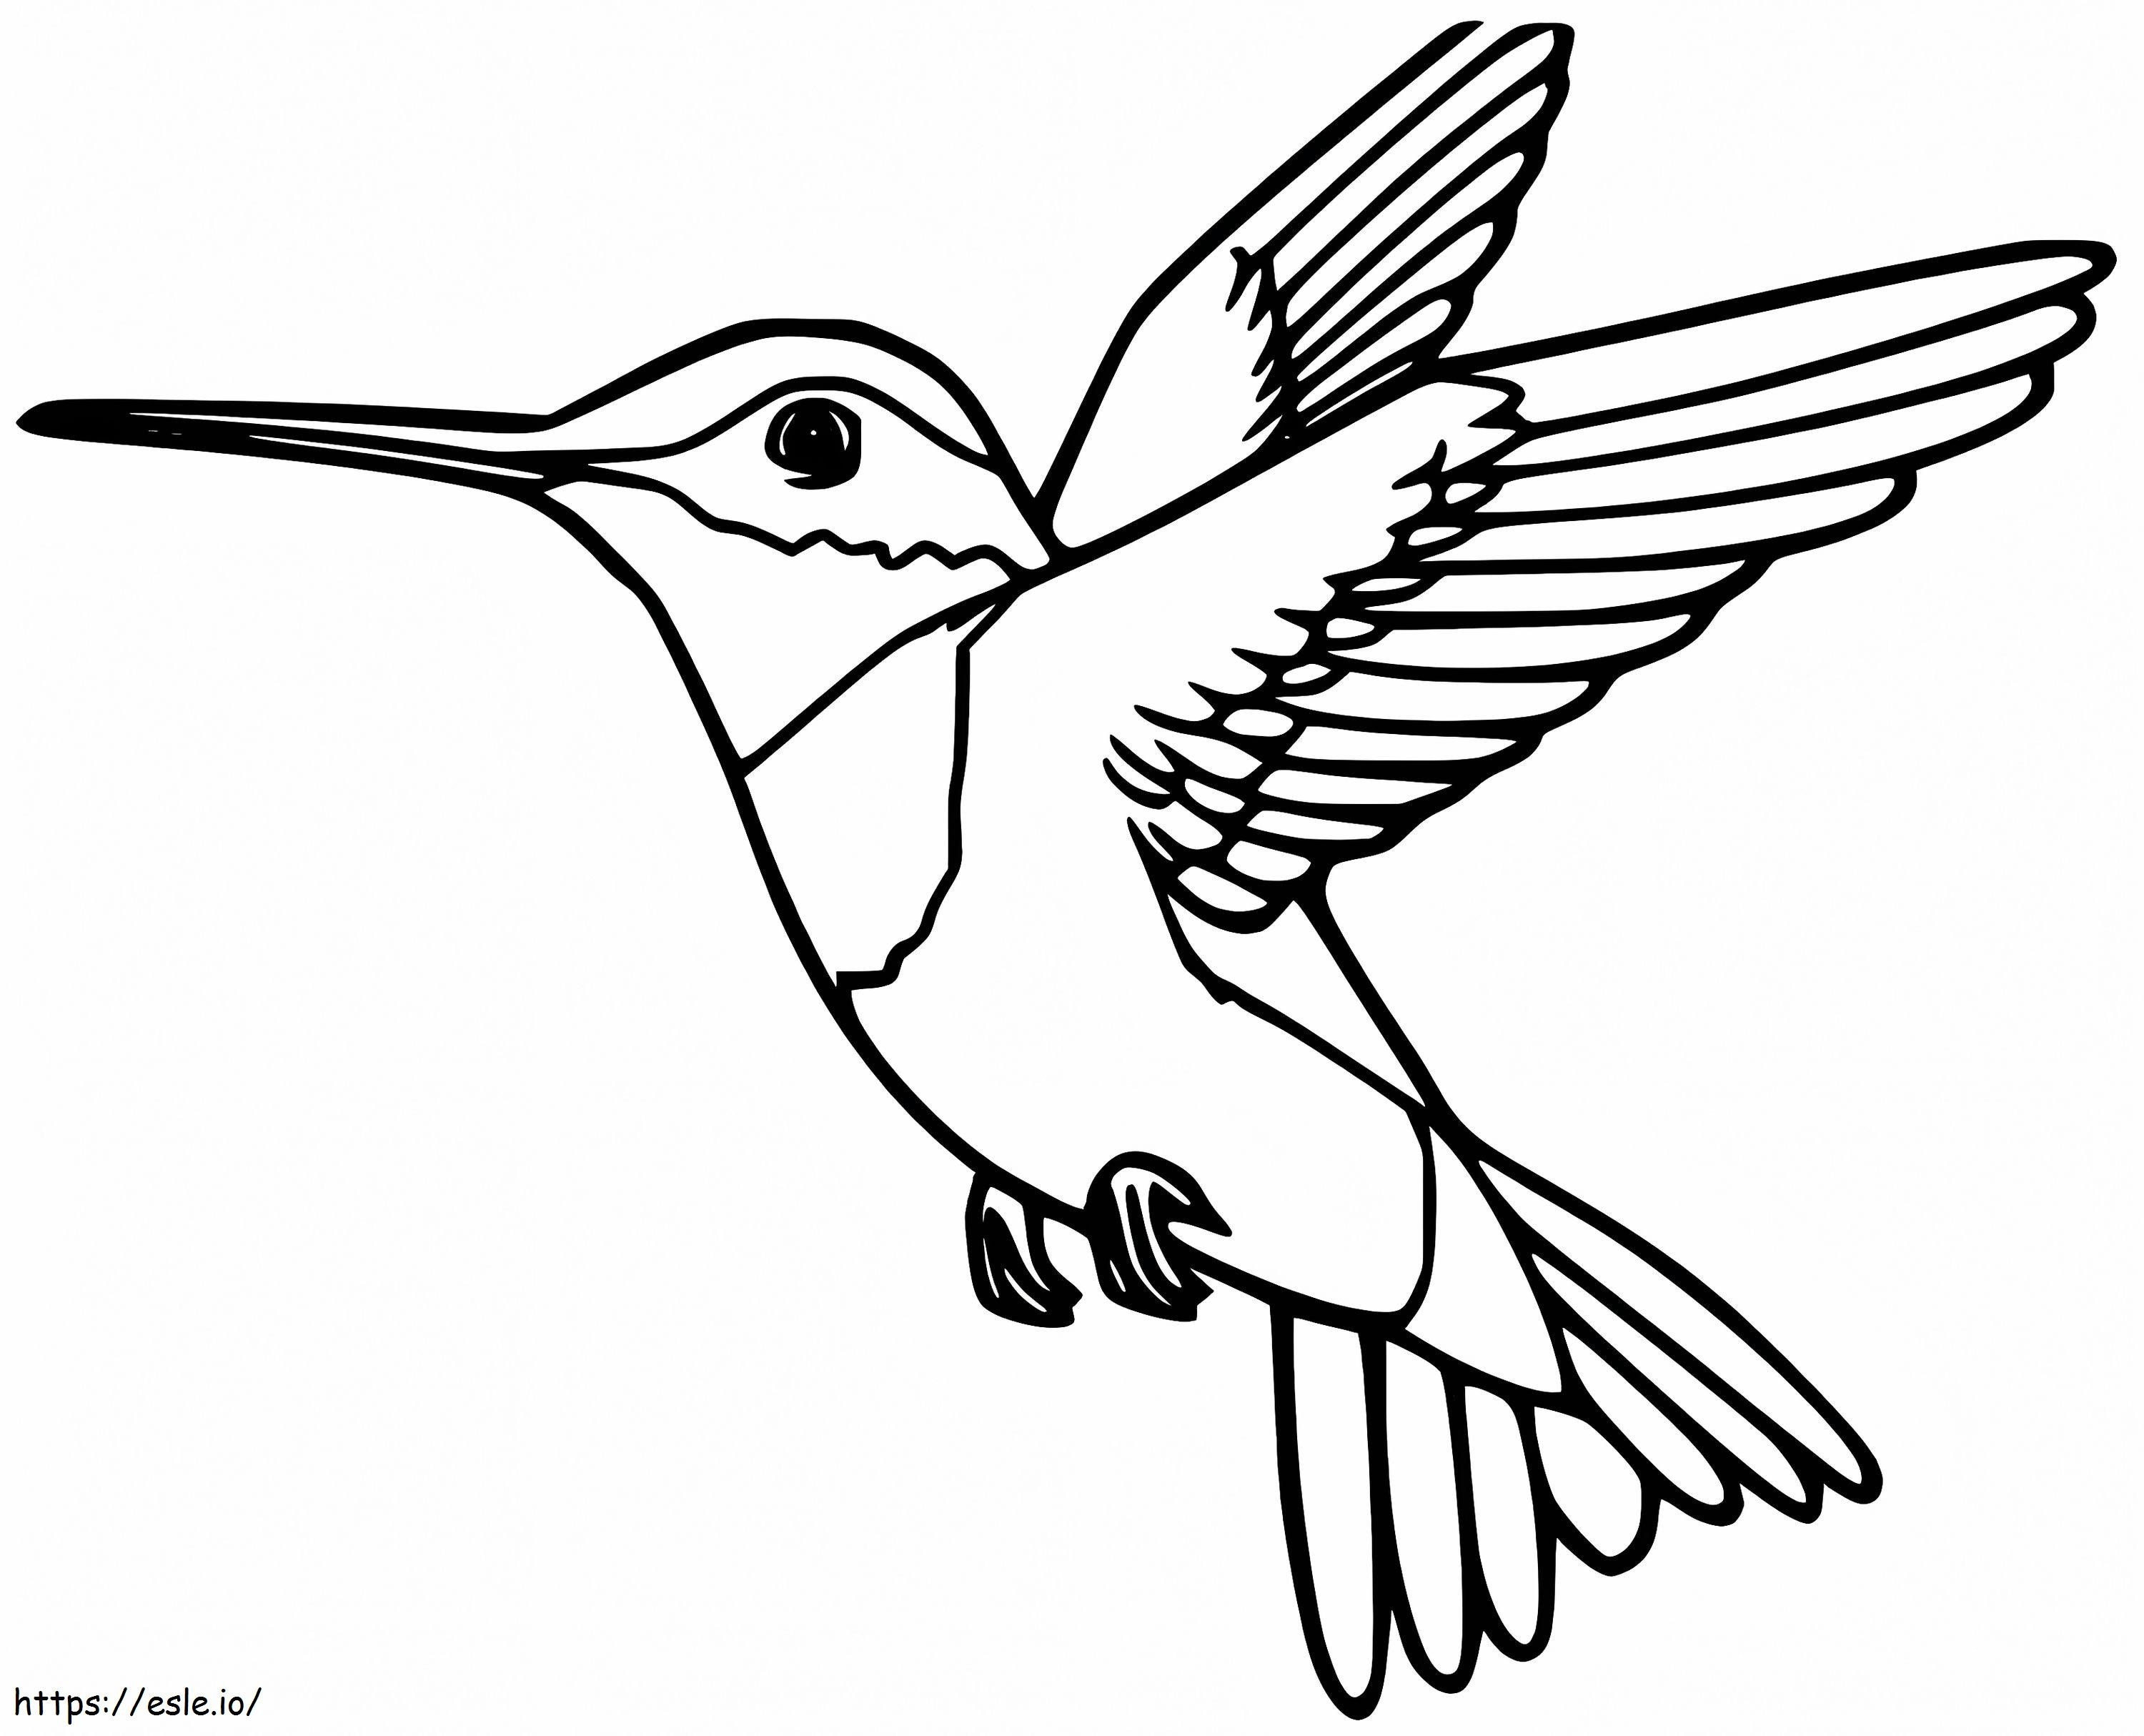 Anas Hummingbird coloring page